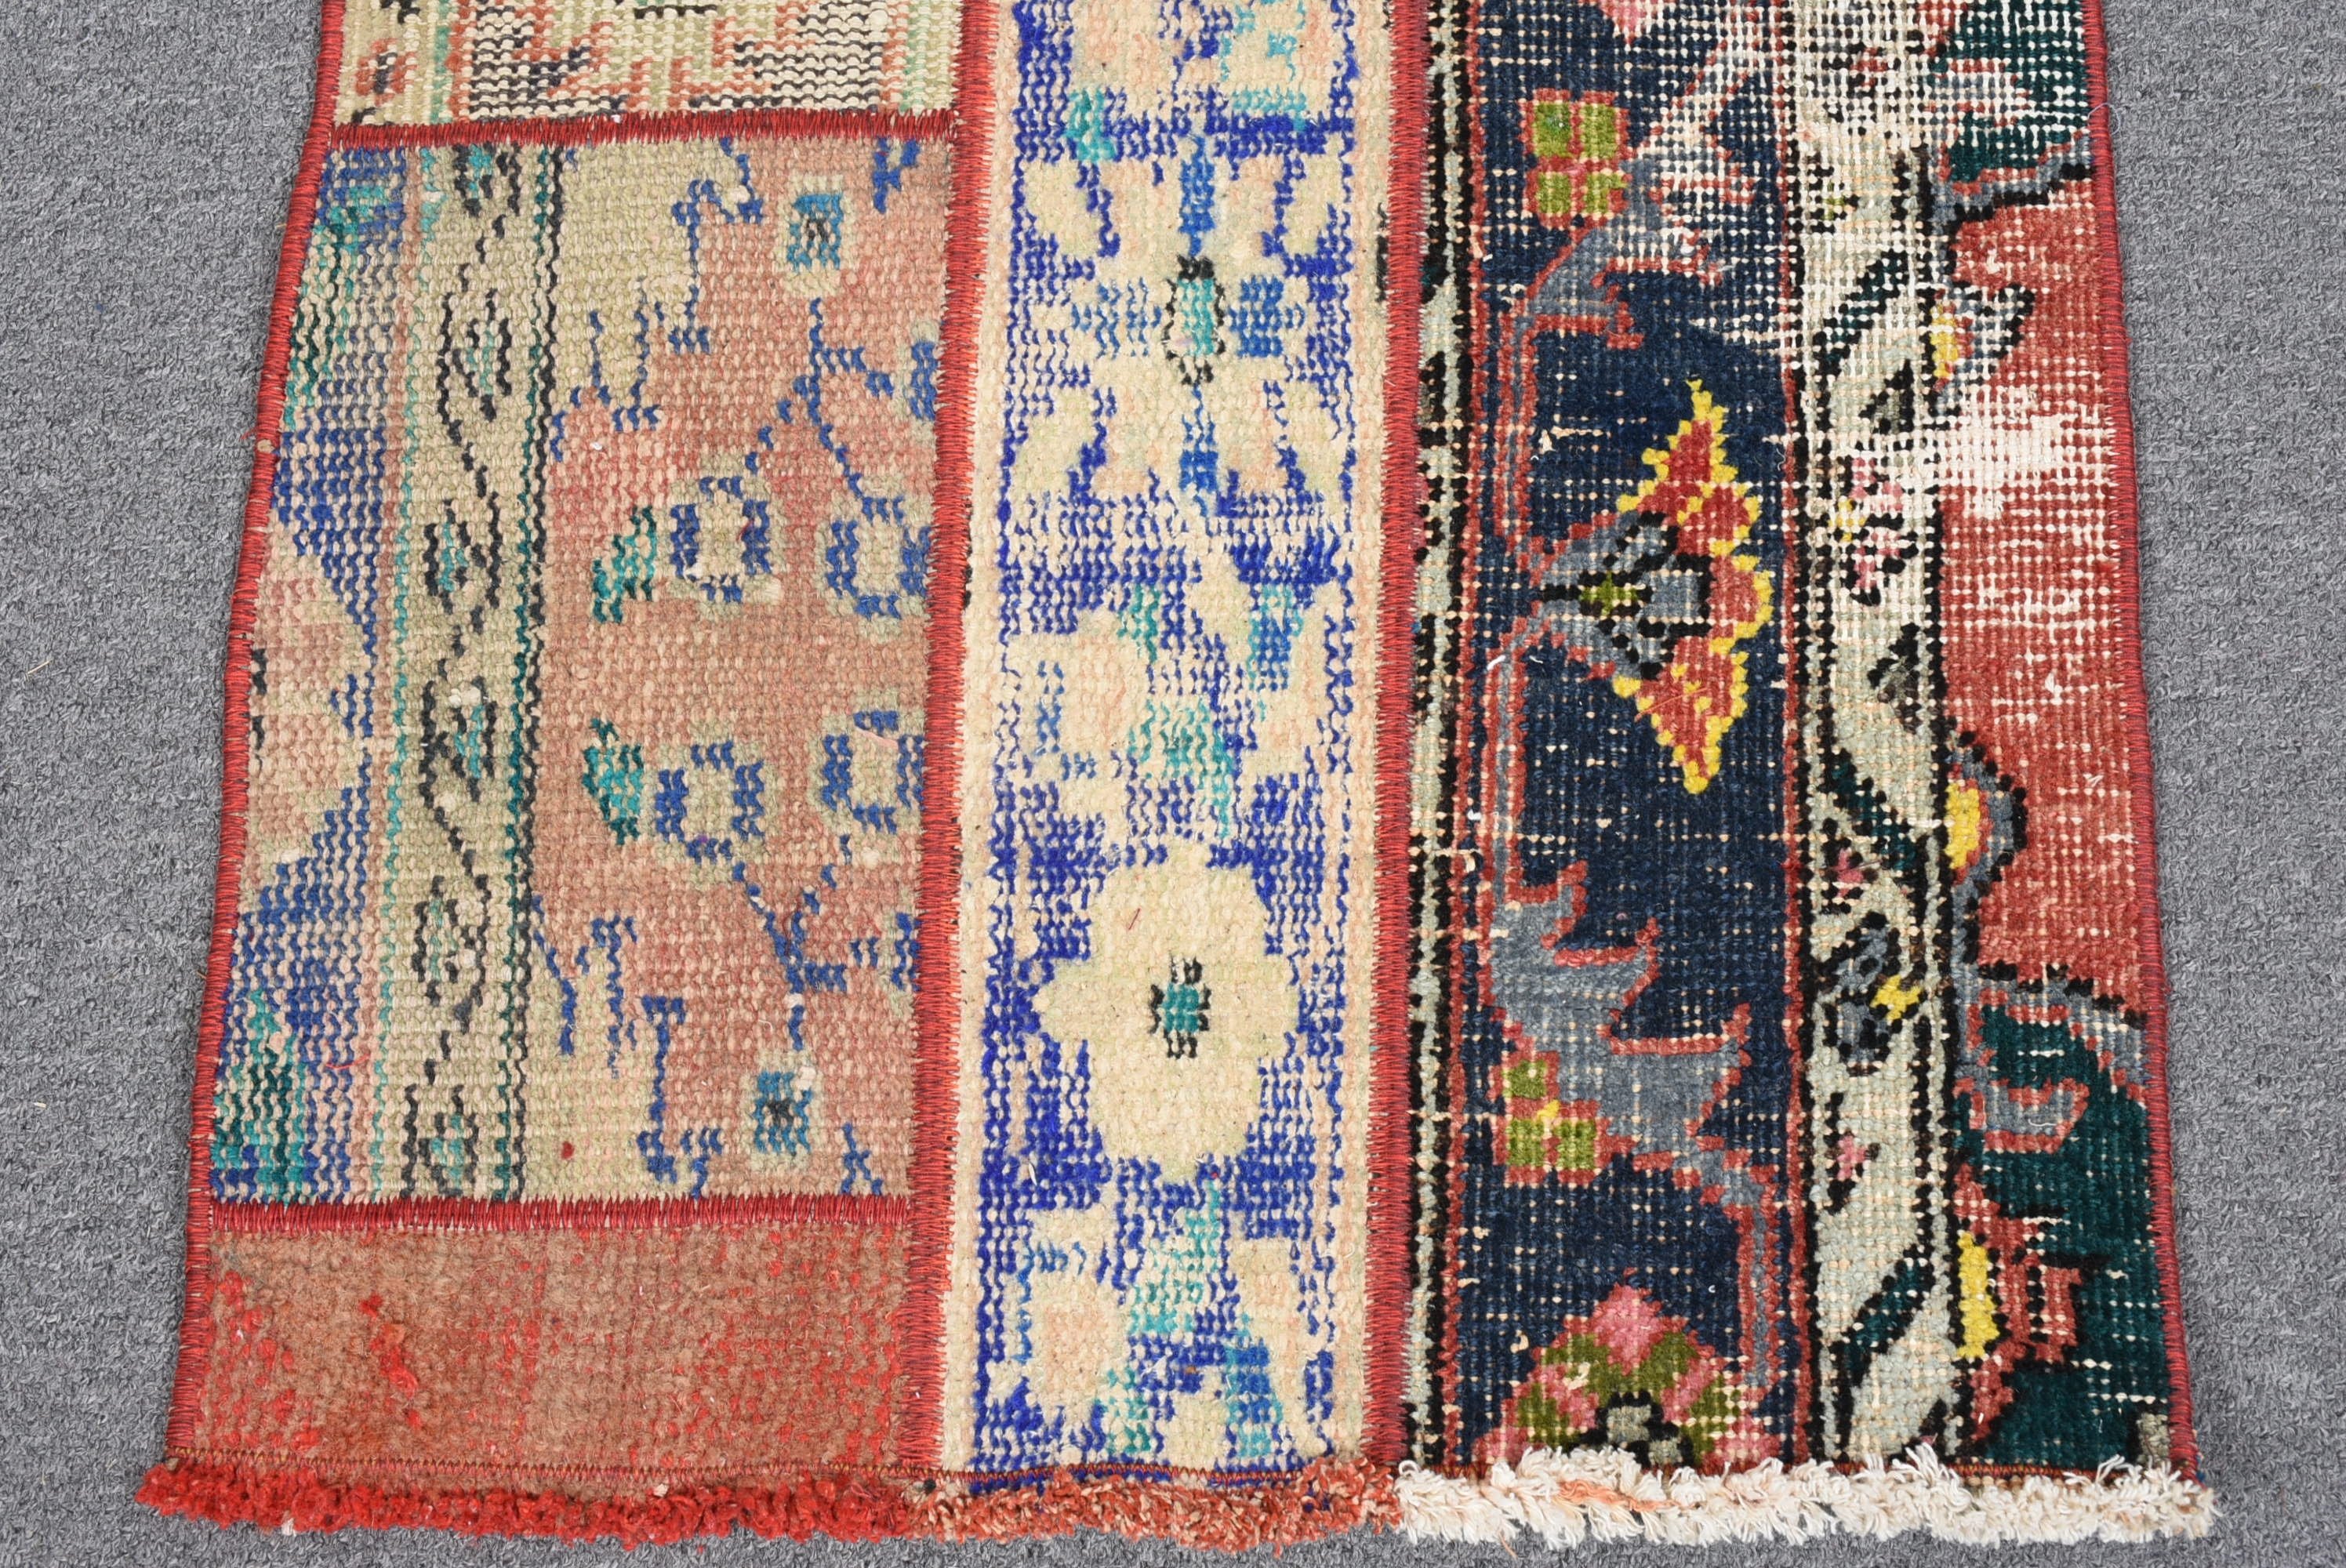 Turkish Rug, Rugs for Bathroom, Organic Rug, Moroccan Rug, Vintage Rug, Kitchen Rug, 1.8x4 ft Small Rug, Nursery Rug, Green Floor Rugs